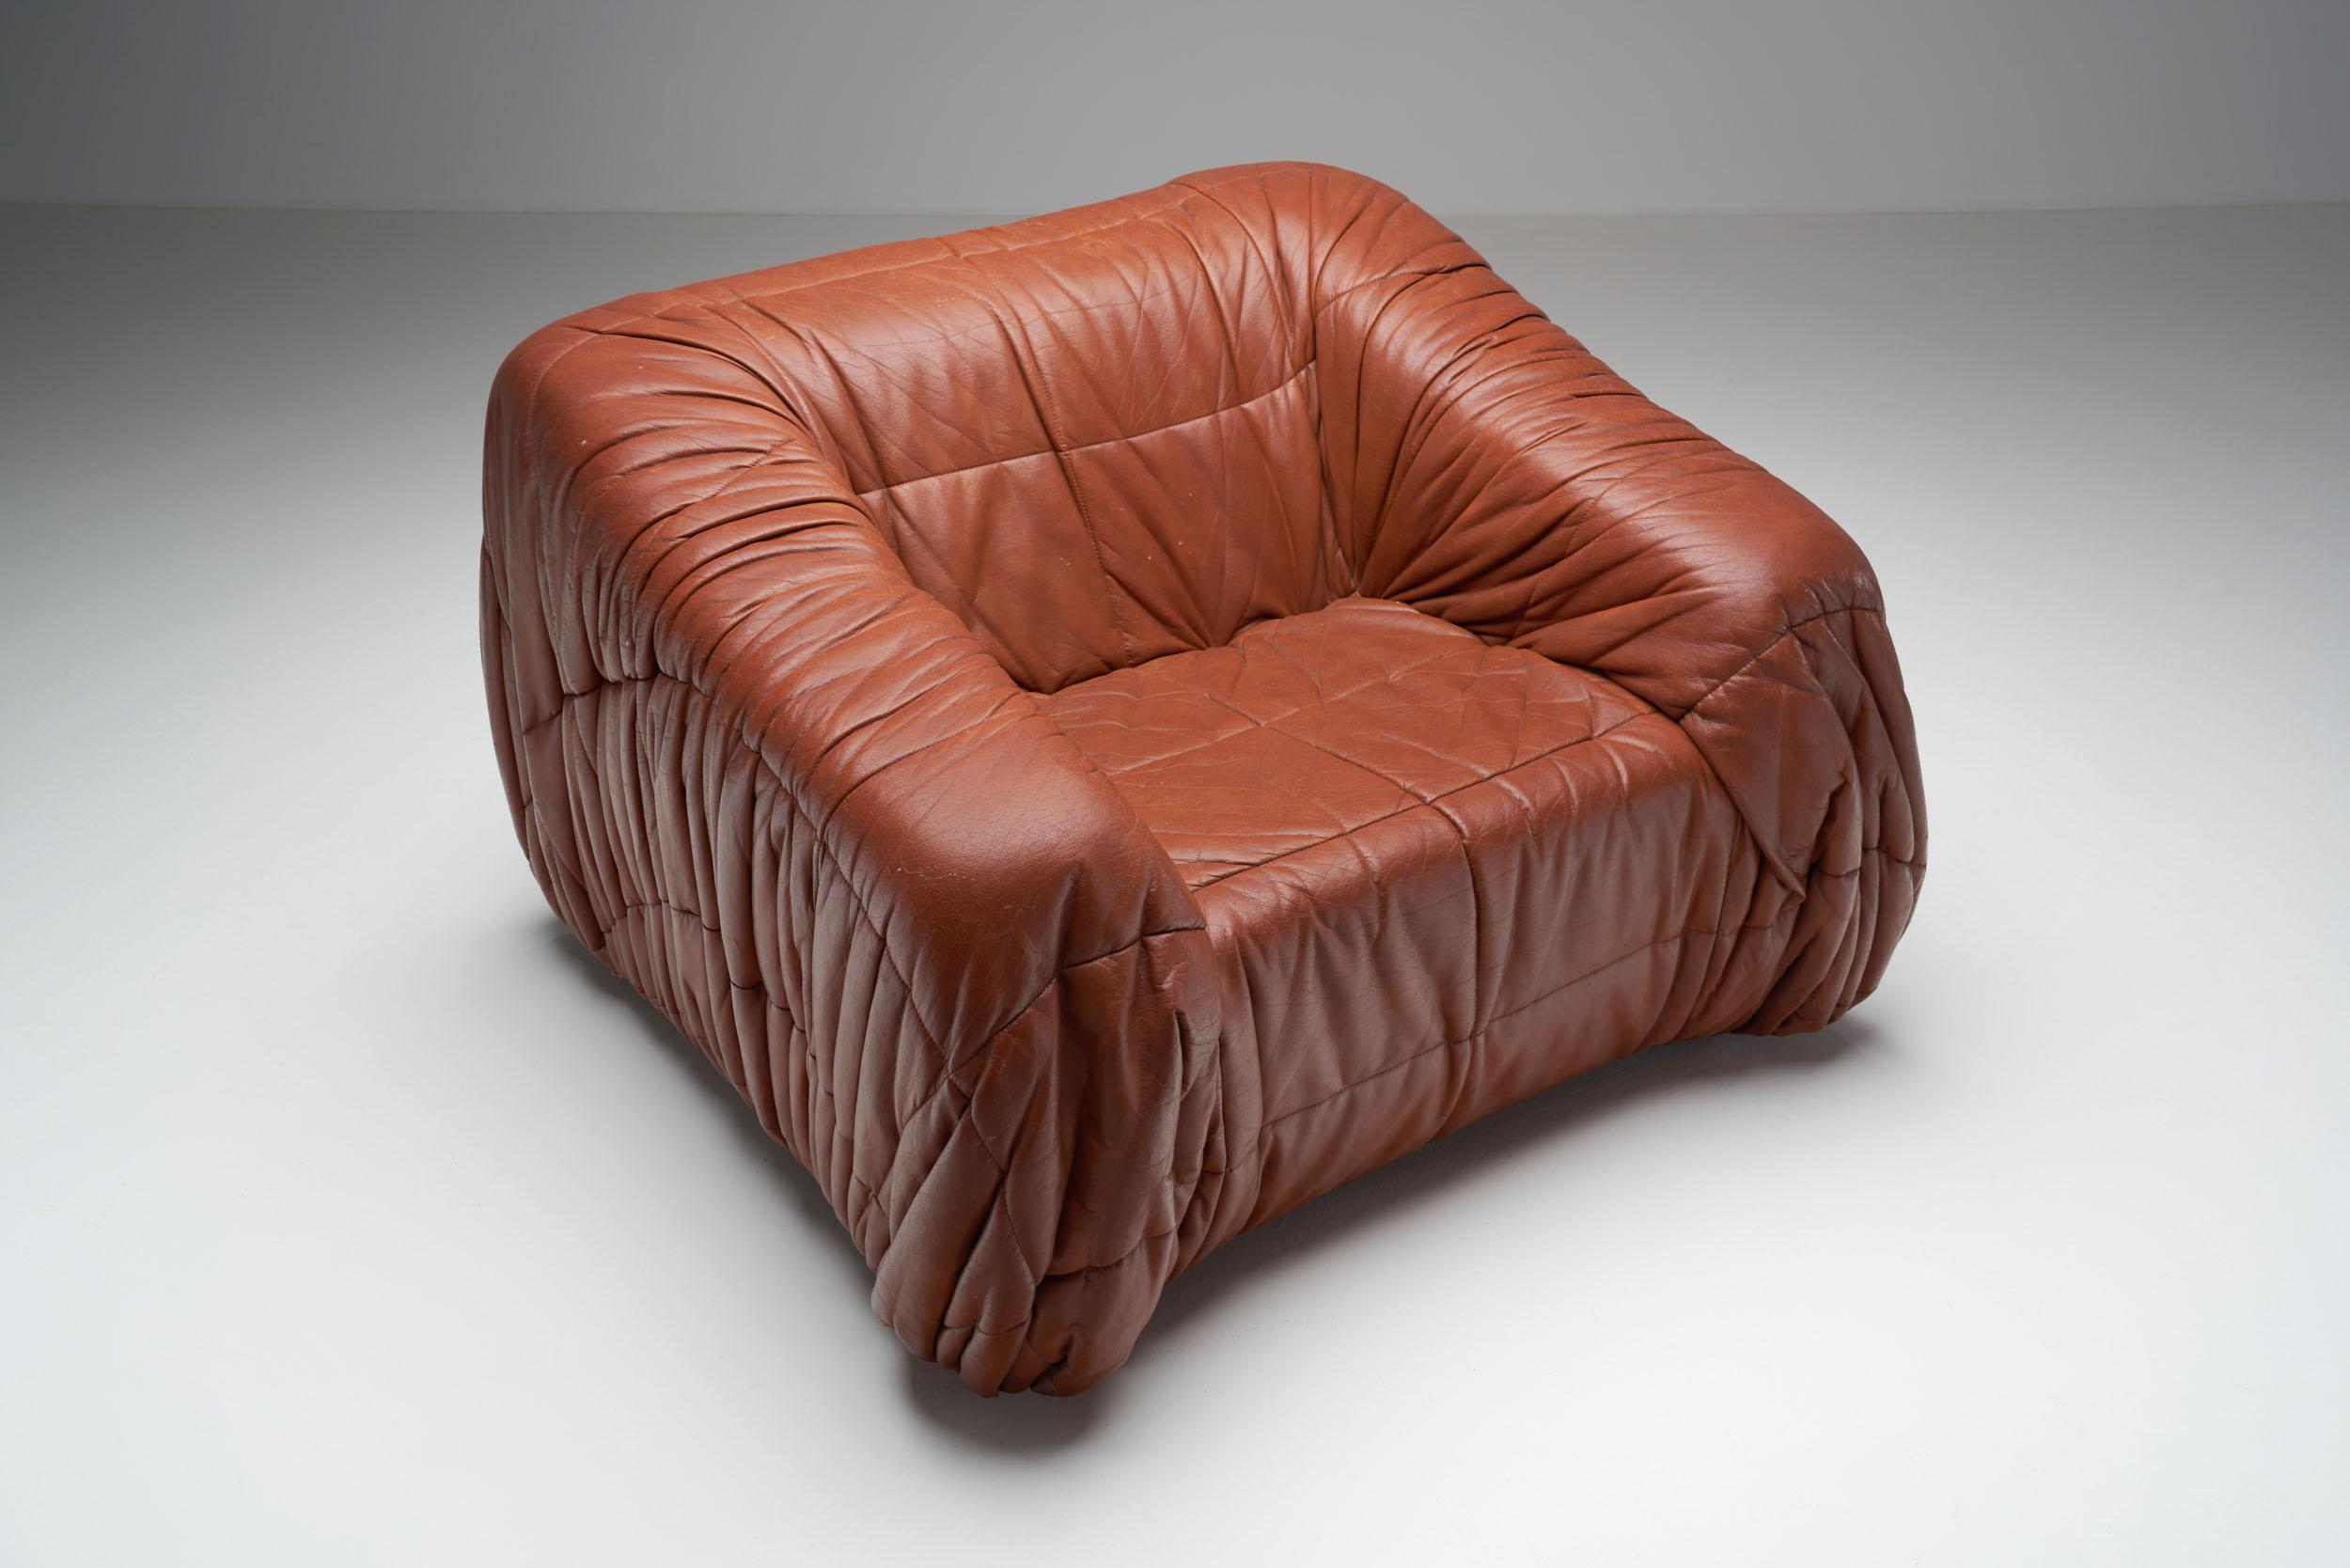 Leather “Piumino” Club Chair by De Pas, D’urbino & Lomazzi for Dell’Oca, Italy 1970s For Sale